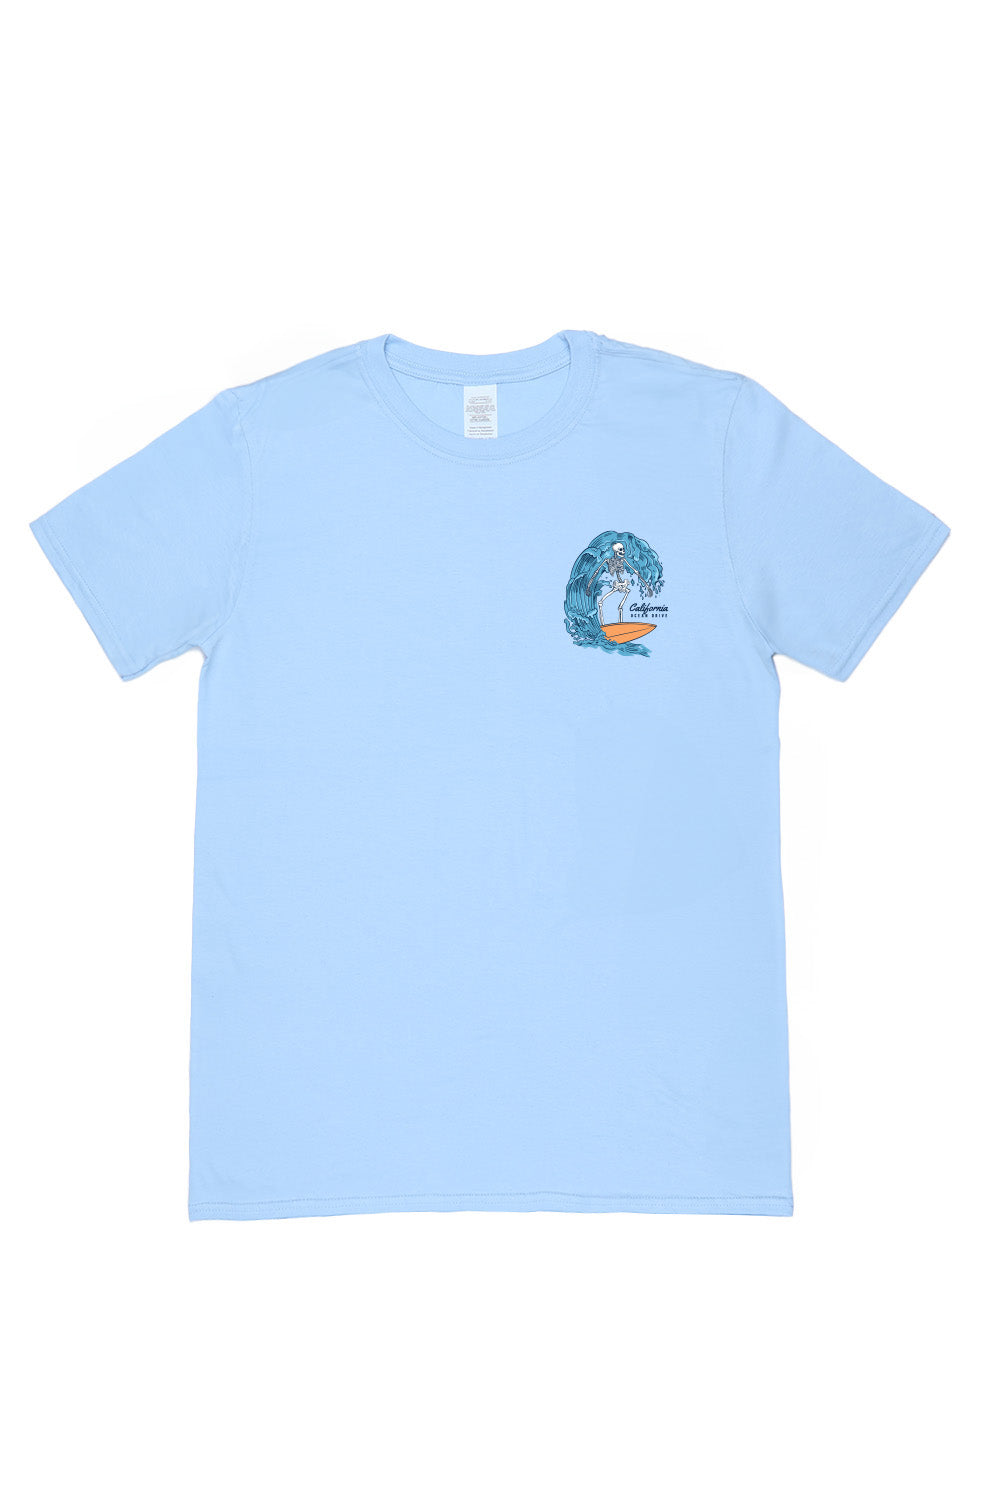 Beach Wave's T-Shirt in Light Blue (Custom Packs)